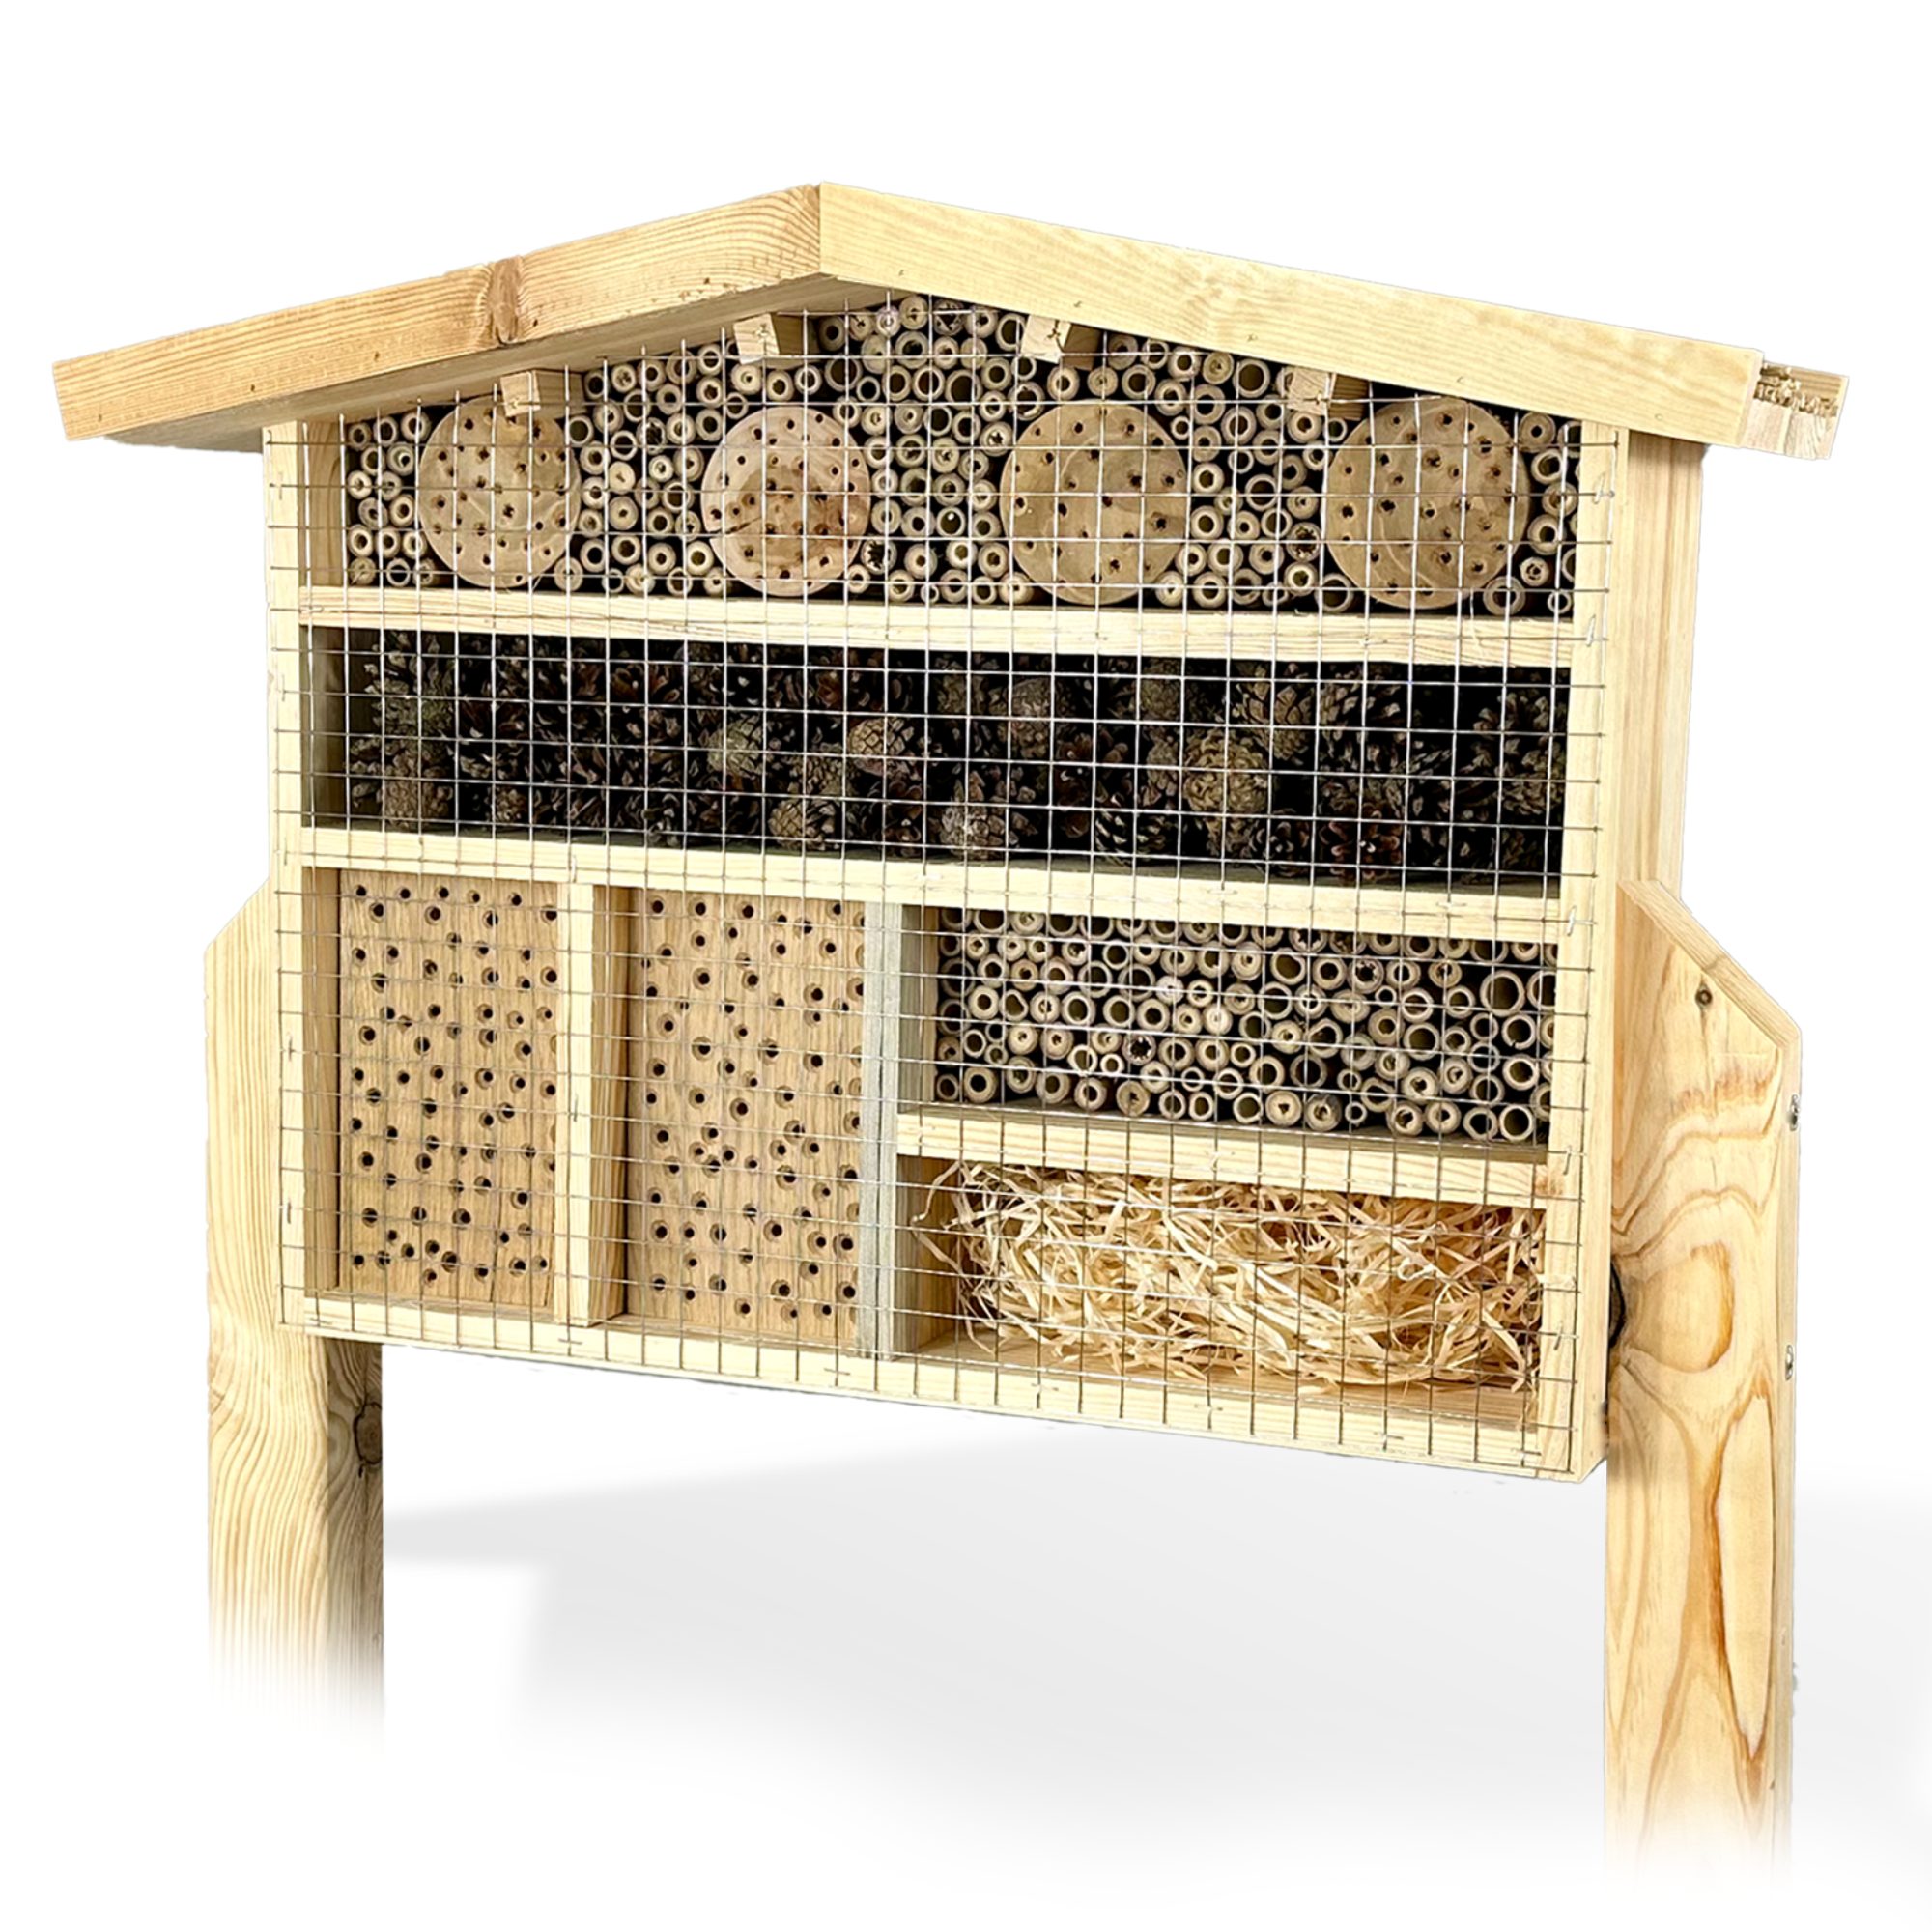 gartenetage Insektenhotel XXL Insektenchalet/Bienenhotel Groß, zum Aufstellen/Insektenhotel aus Massiv-Holz für Bienen & Marienkäfer